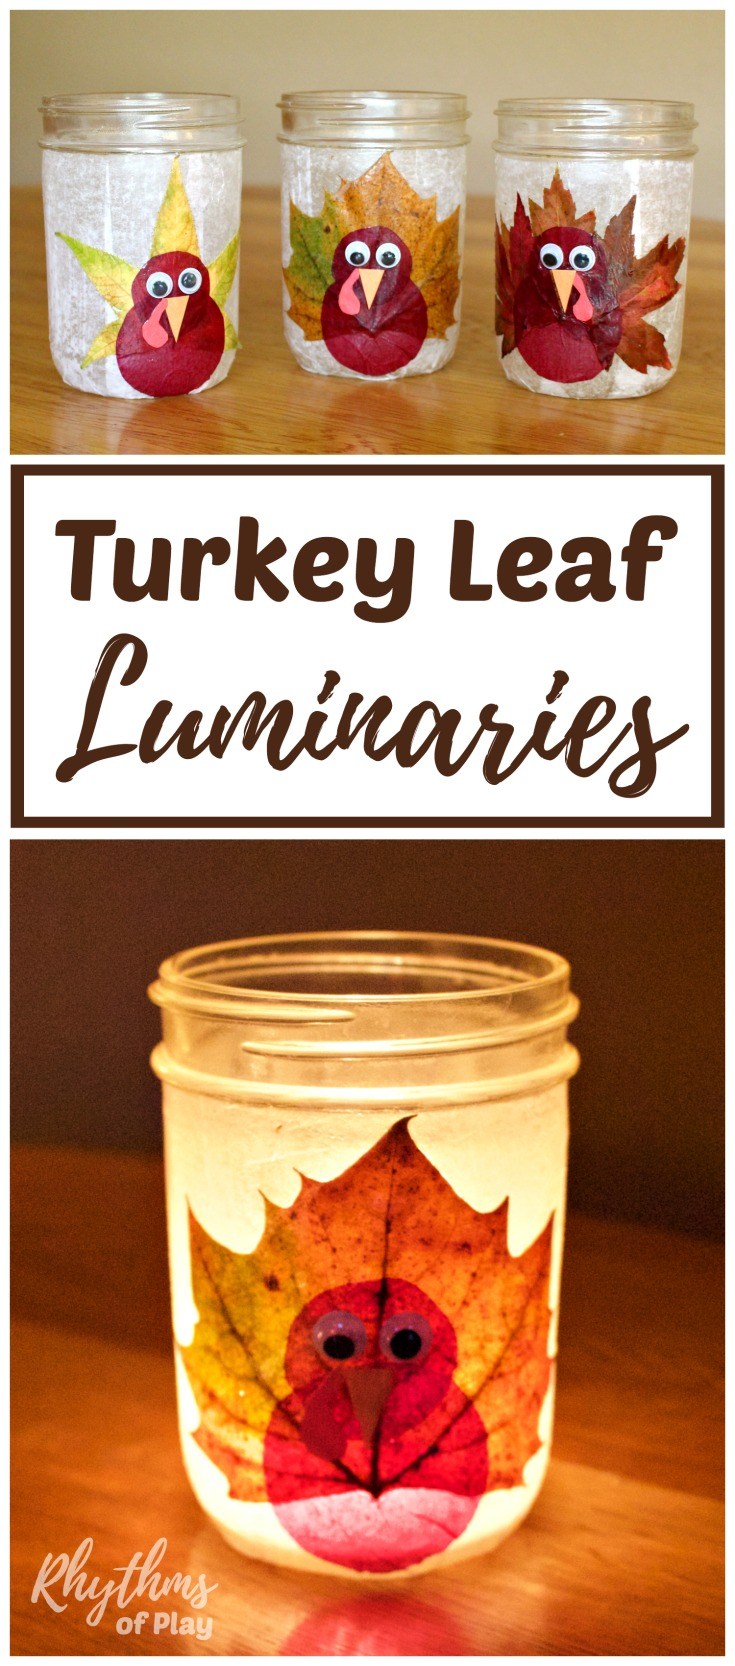 Turkey Leaf Lanterns Thanksgiving Craft.